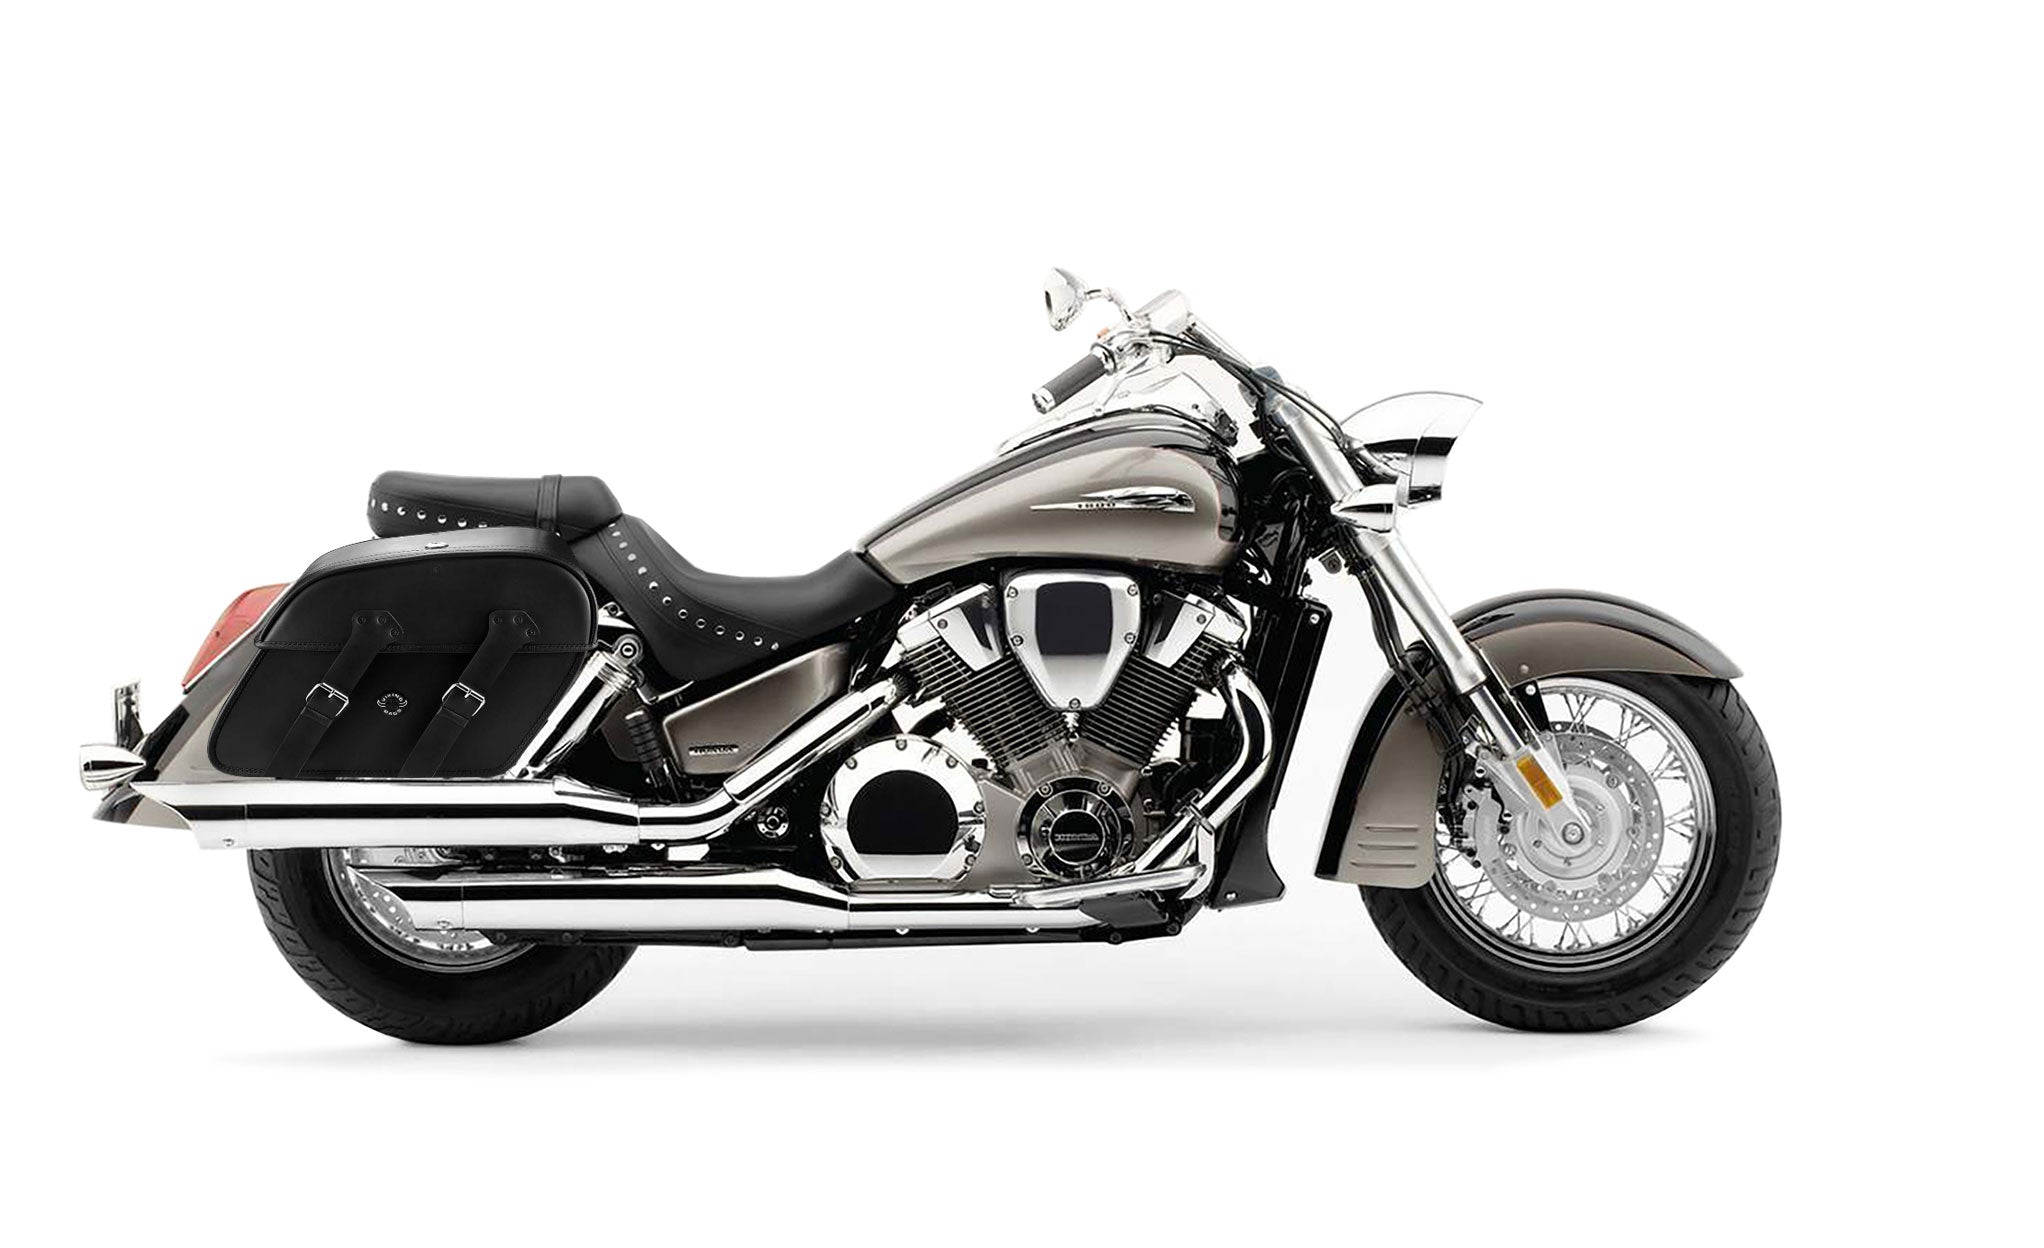 Viking Raven Extra Large Honda Vtx 1800 S Leather Motorcycle Saddlebags on Bike Photo @expand